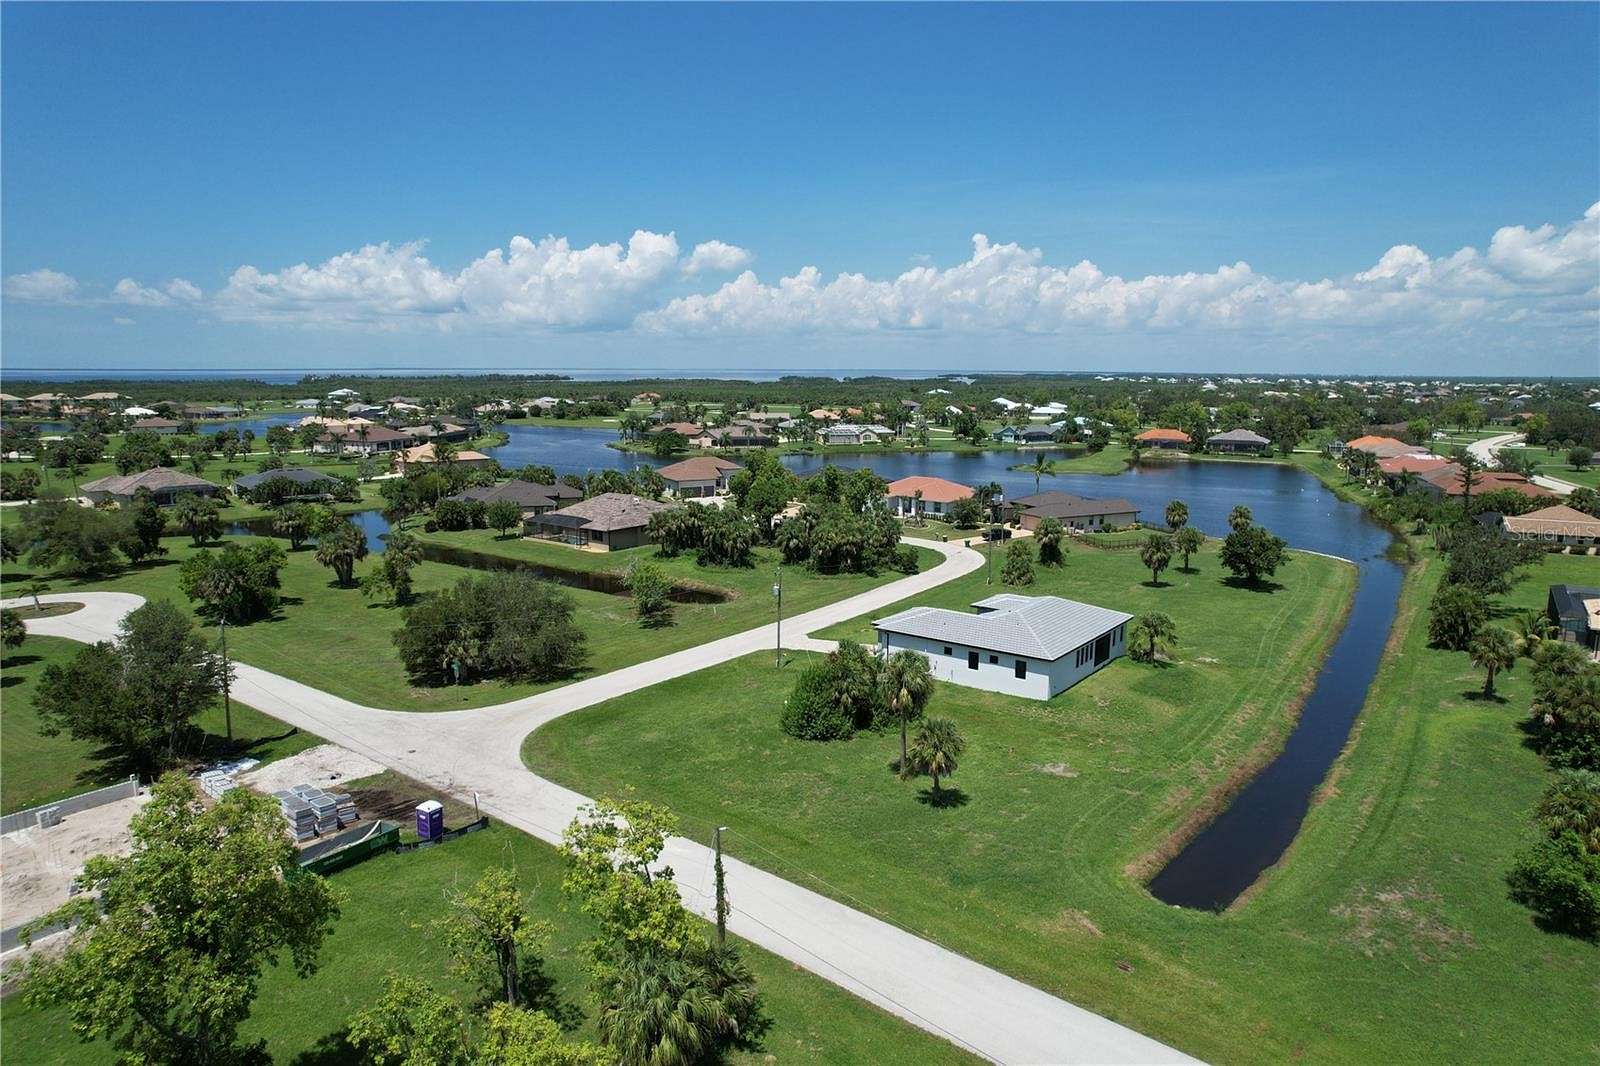 0.2 Acres of Land for Sale in Punta Gorda, Florida